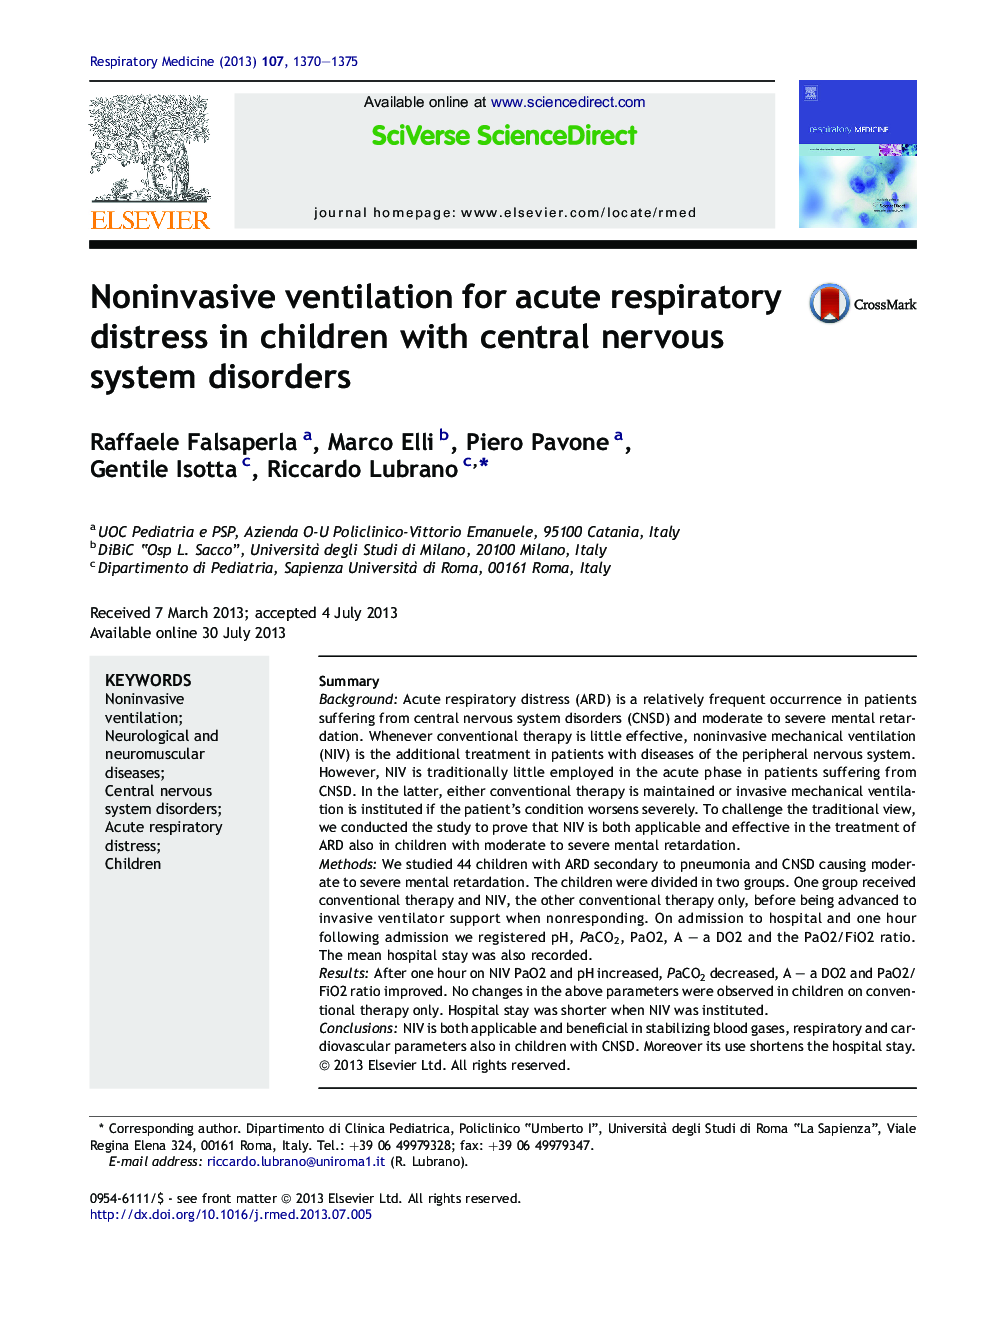 تهویه غیر تهاجمی برای پریشانی حاد تنفسی در کودکان مبتلا به اختلالات سیستم عصبی مرکزی 